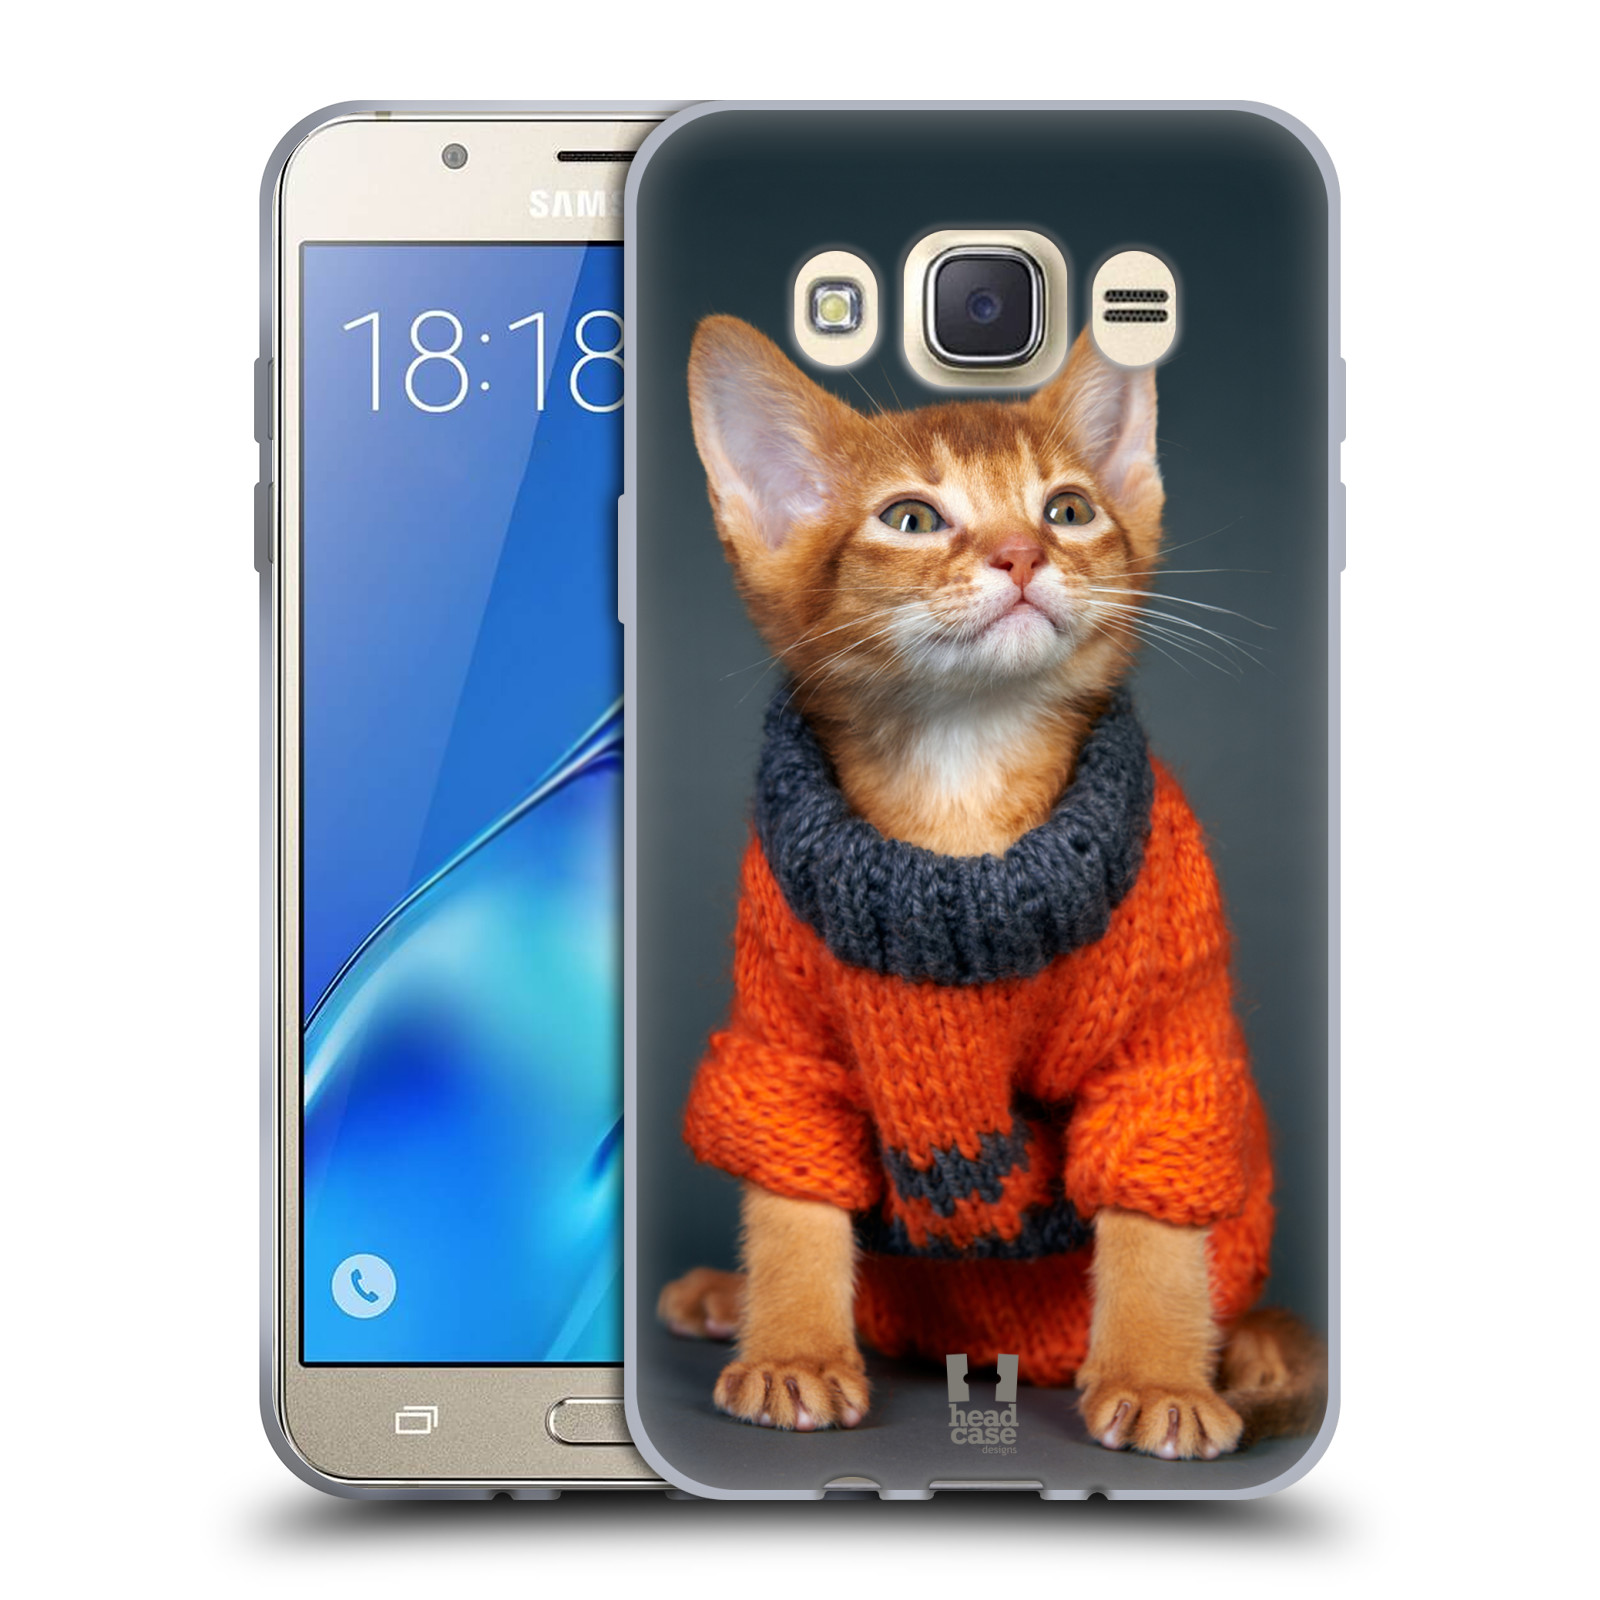 HEAD CASE silikonový obal, kryt na mobil Samsung Galaxy J7 2016 (J710, J710F) vzor Legrační zvířátka kočička v oranžovém svetru